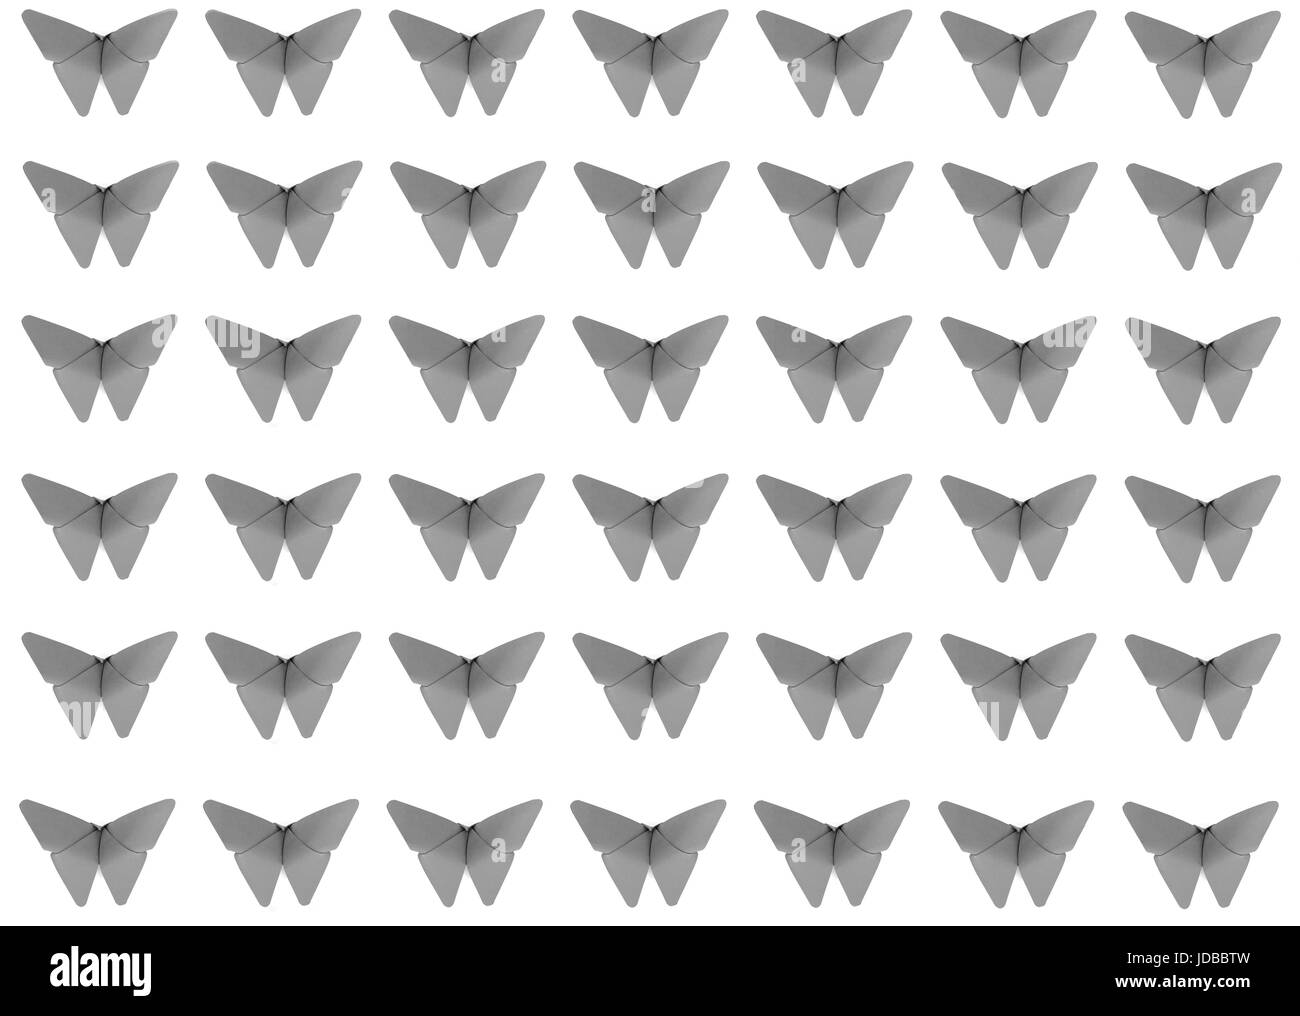 Motif papillons Origami en niveaux de gris Banque D'Images